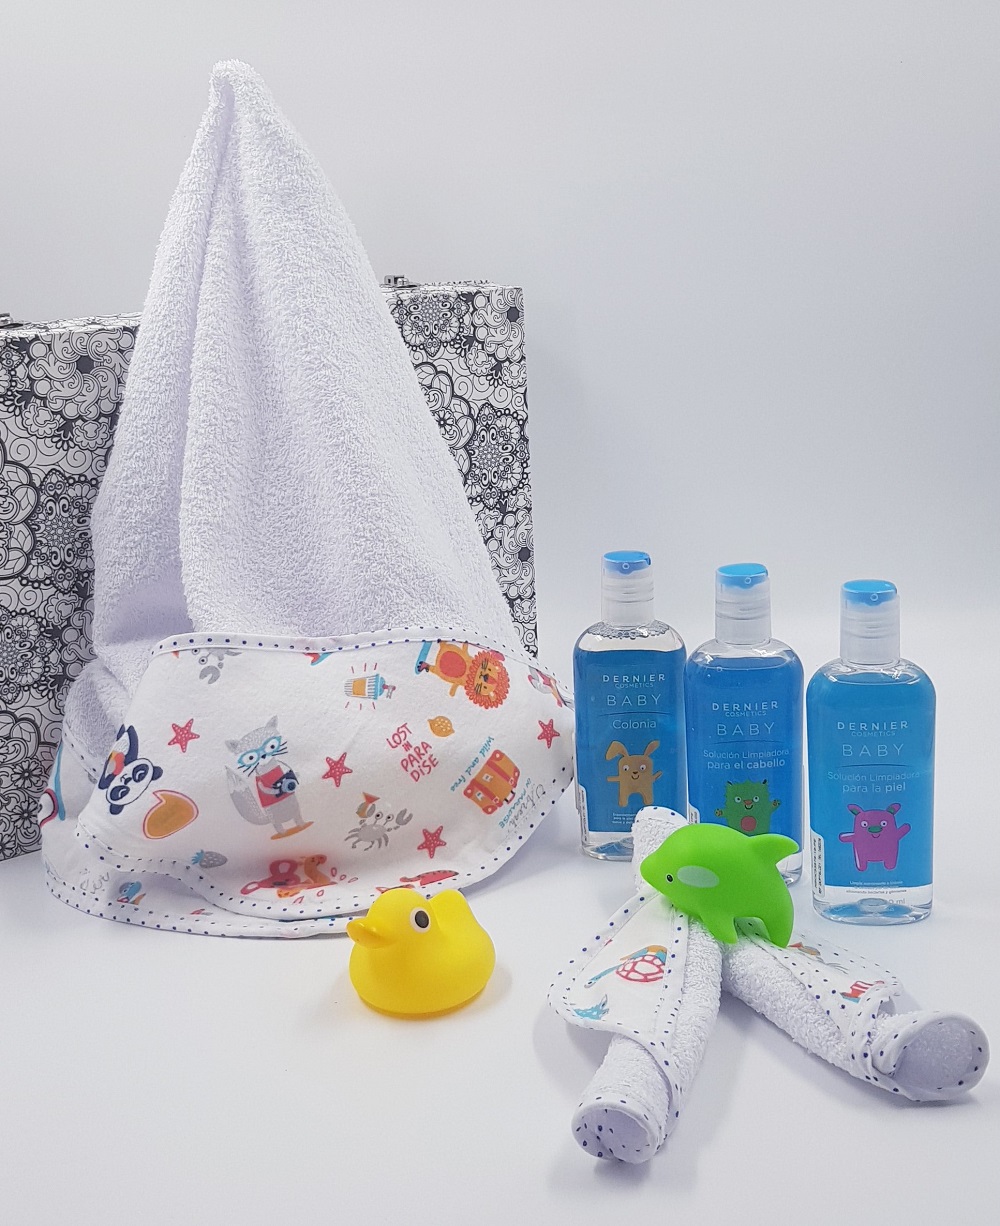 Artículos de baño para bebé, juguetes, toallas y más